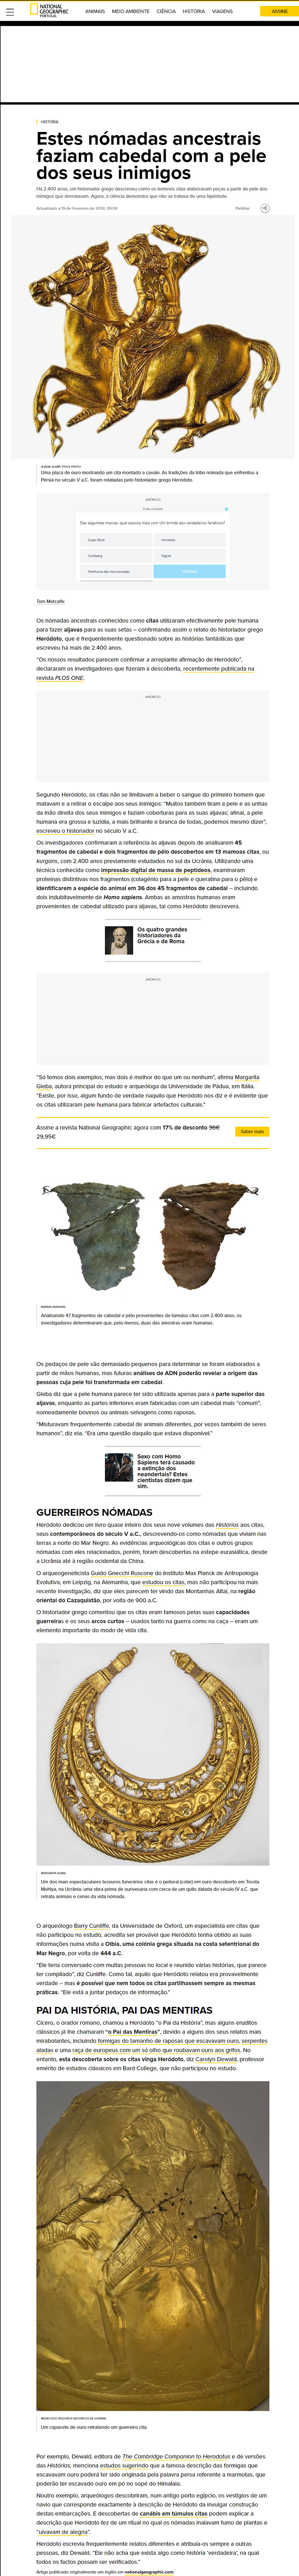 Arqueologia/Antropologia/Paleontologia/ADN - Página 2 MES48DO_o